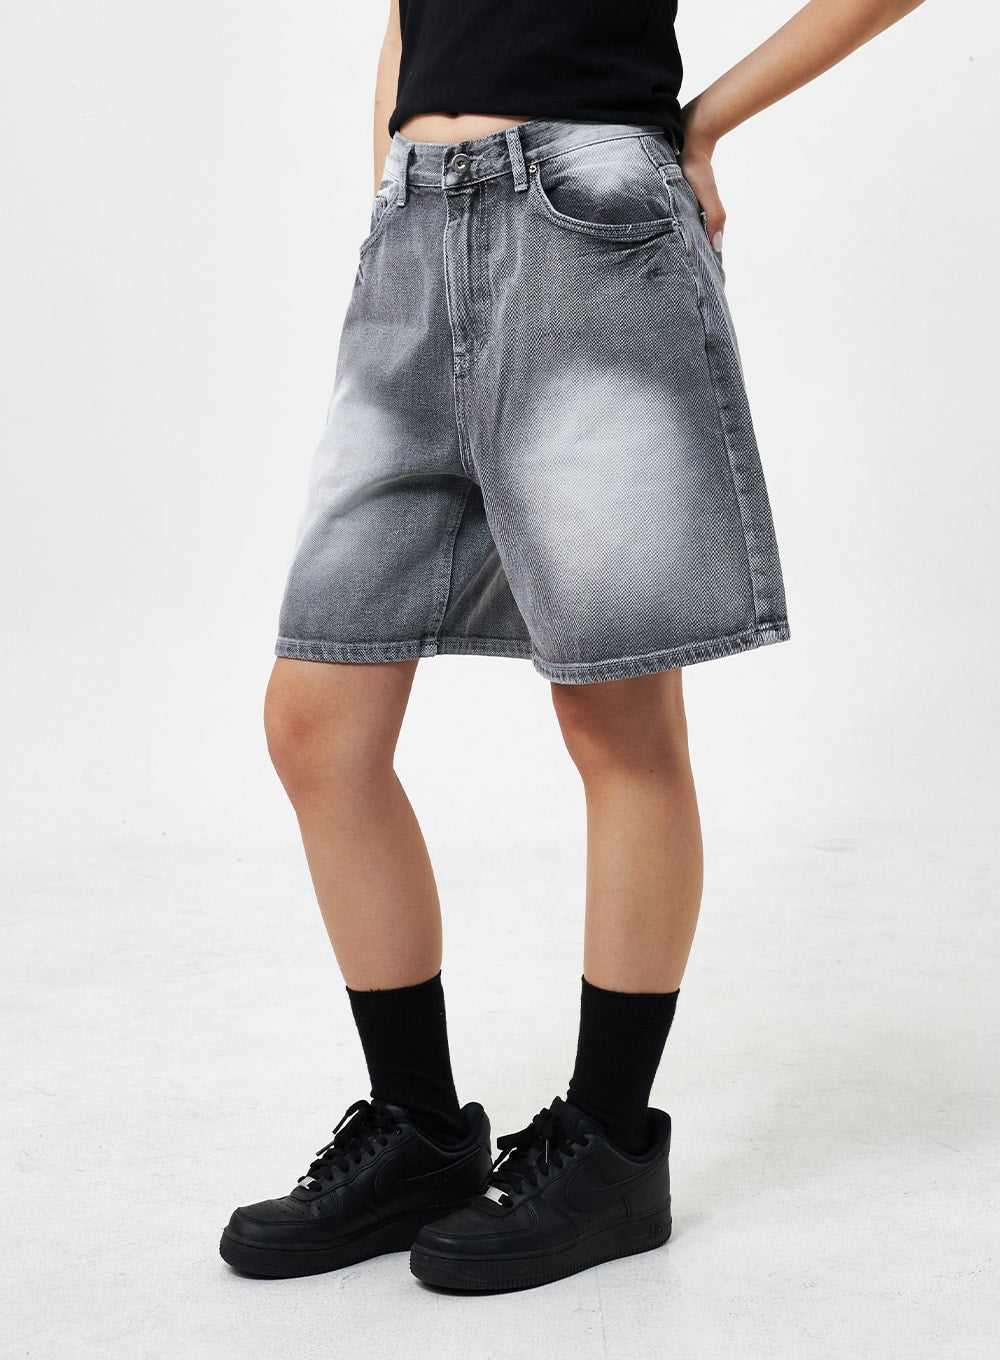 bermuda-denim-shorts-cu301